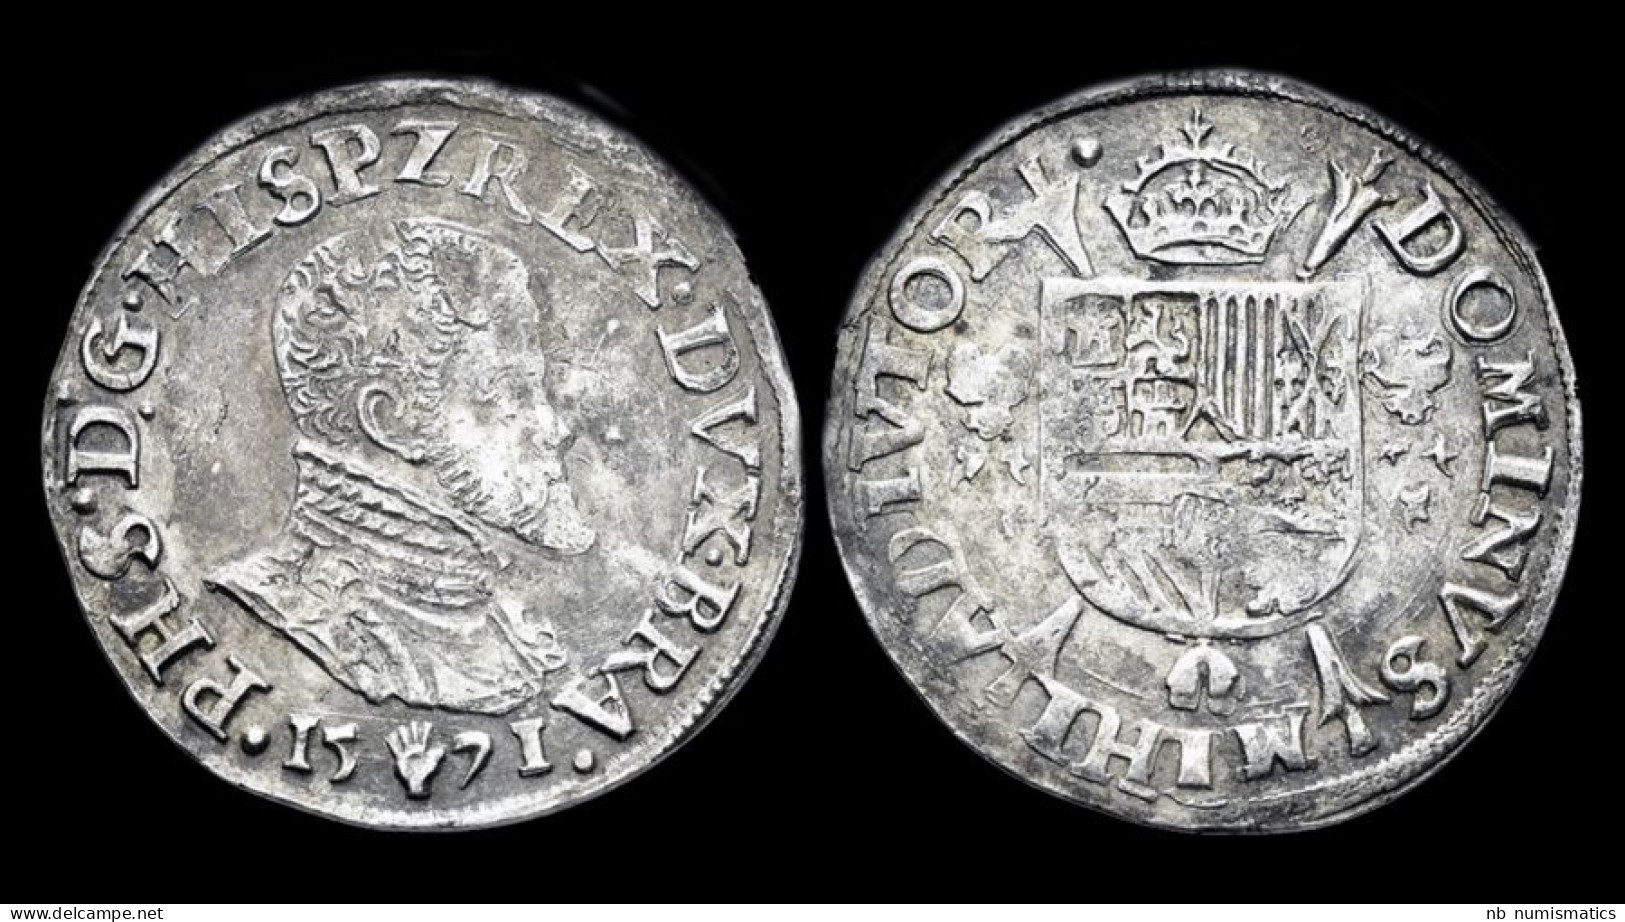 Southern Netherlands Brabant Filips II 1/5 Filipsdaalder 1571 - 1556-1713 Pays-Bas Espagols